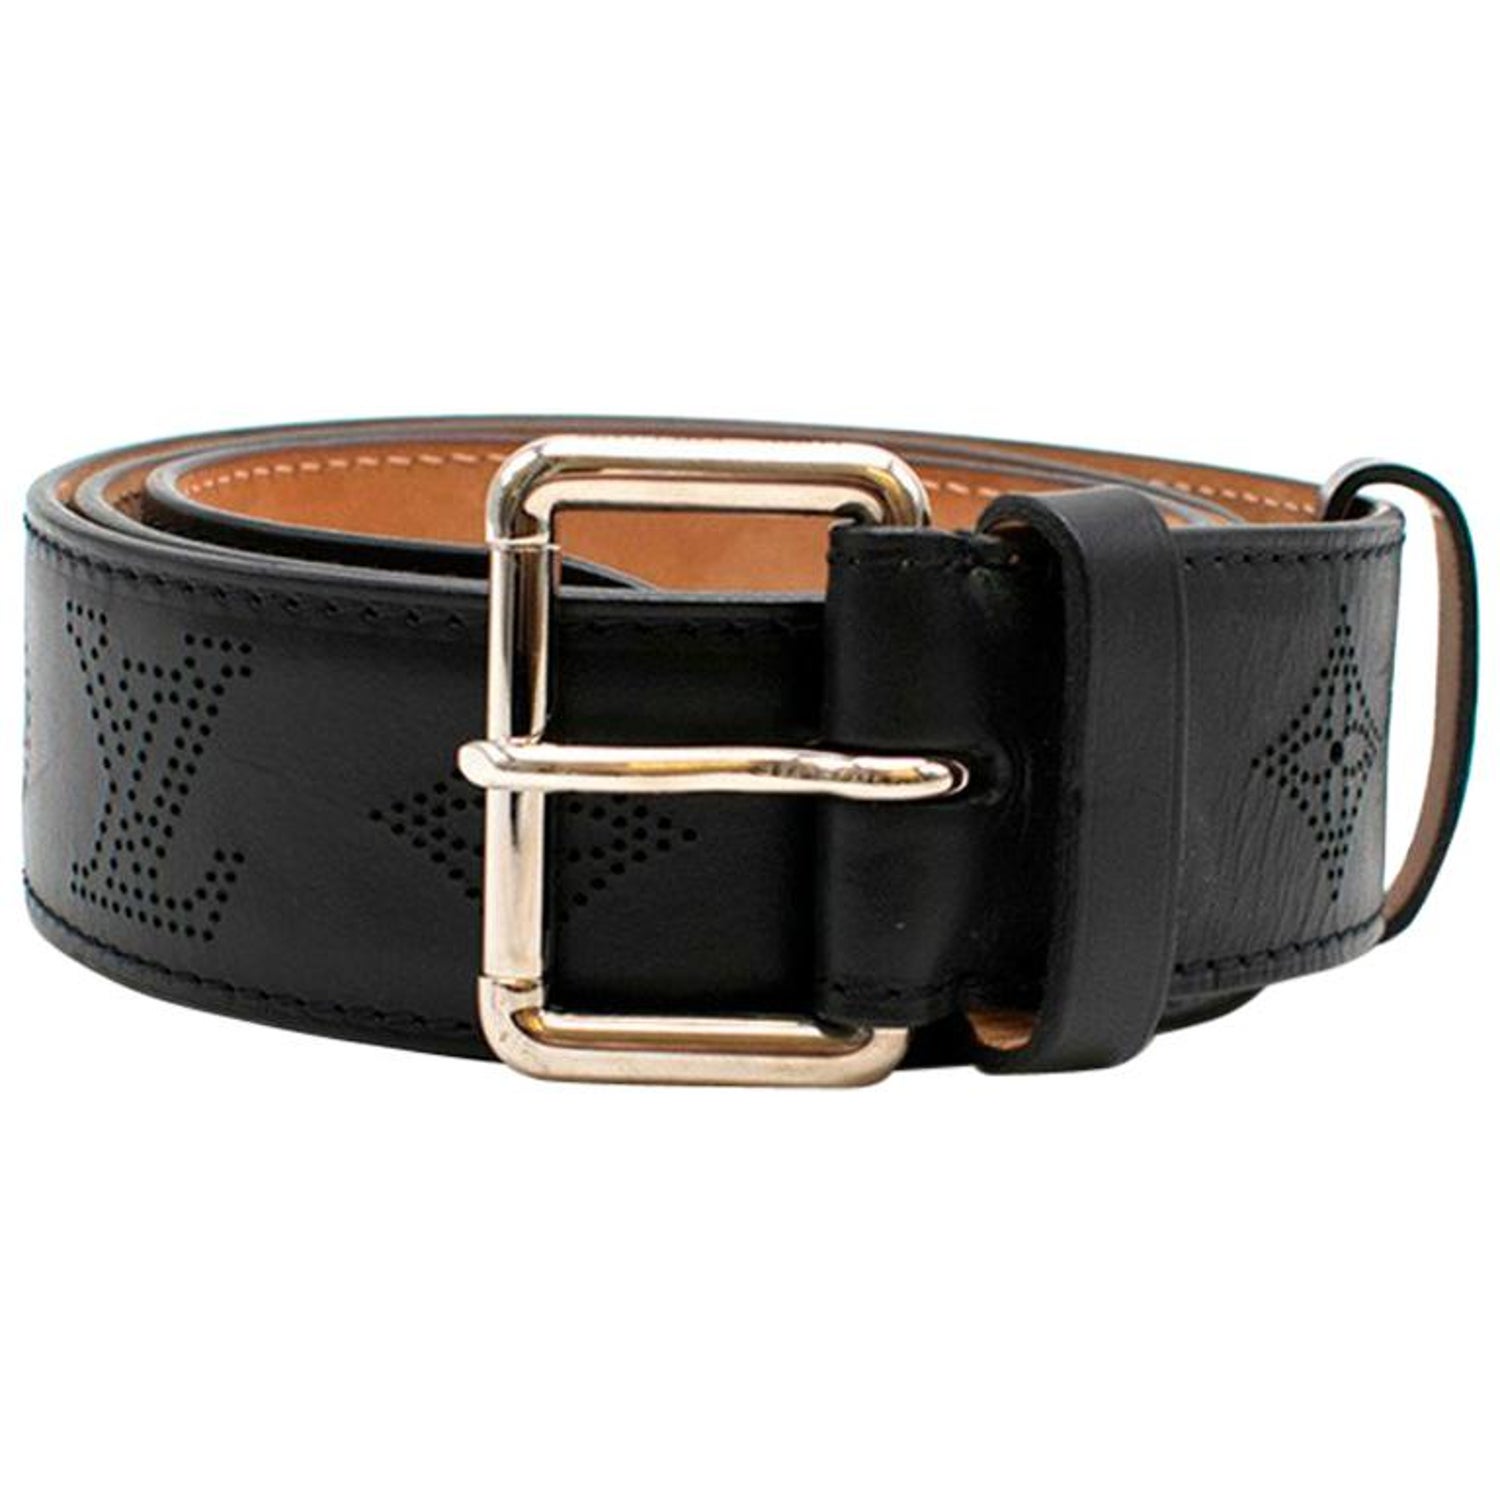 Louis Vuitton Mens Belt Black Buckle - For Sale on 1stDibs  black buckle lv  belt, louis vuitton belt buckle, louis vuitton black buckle belt